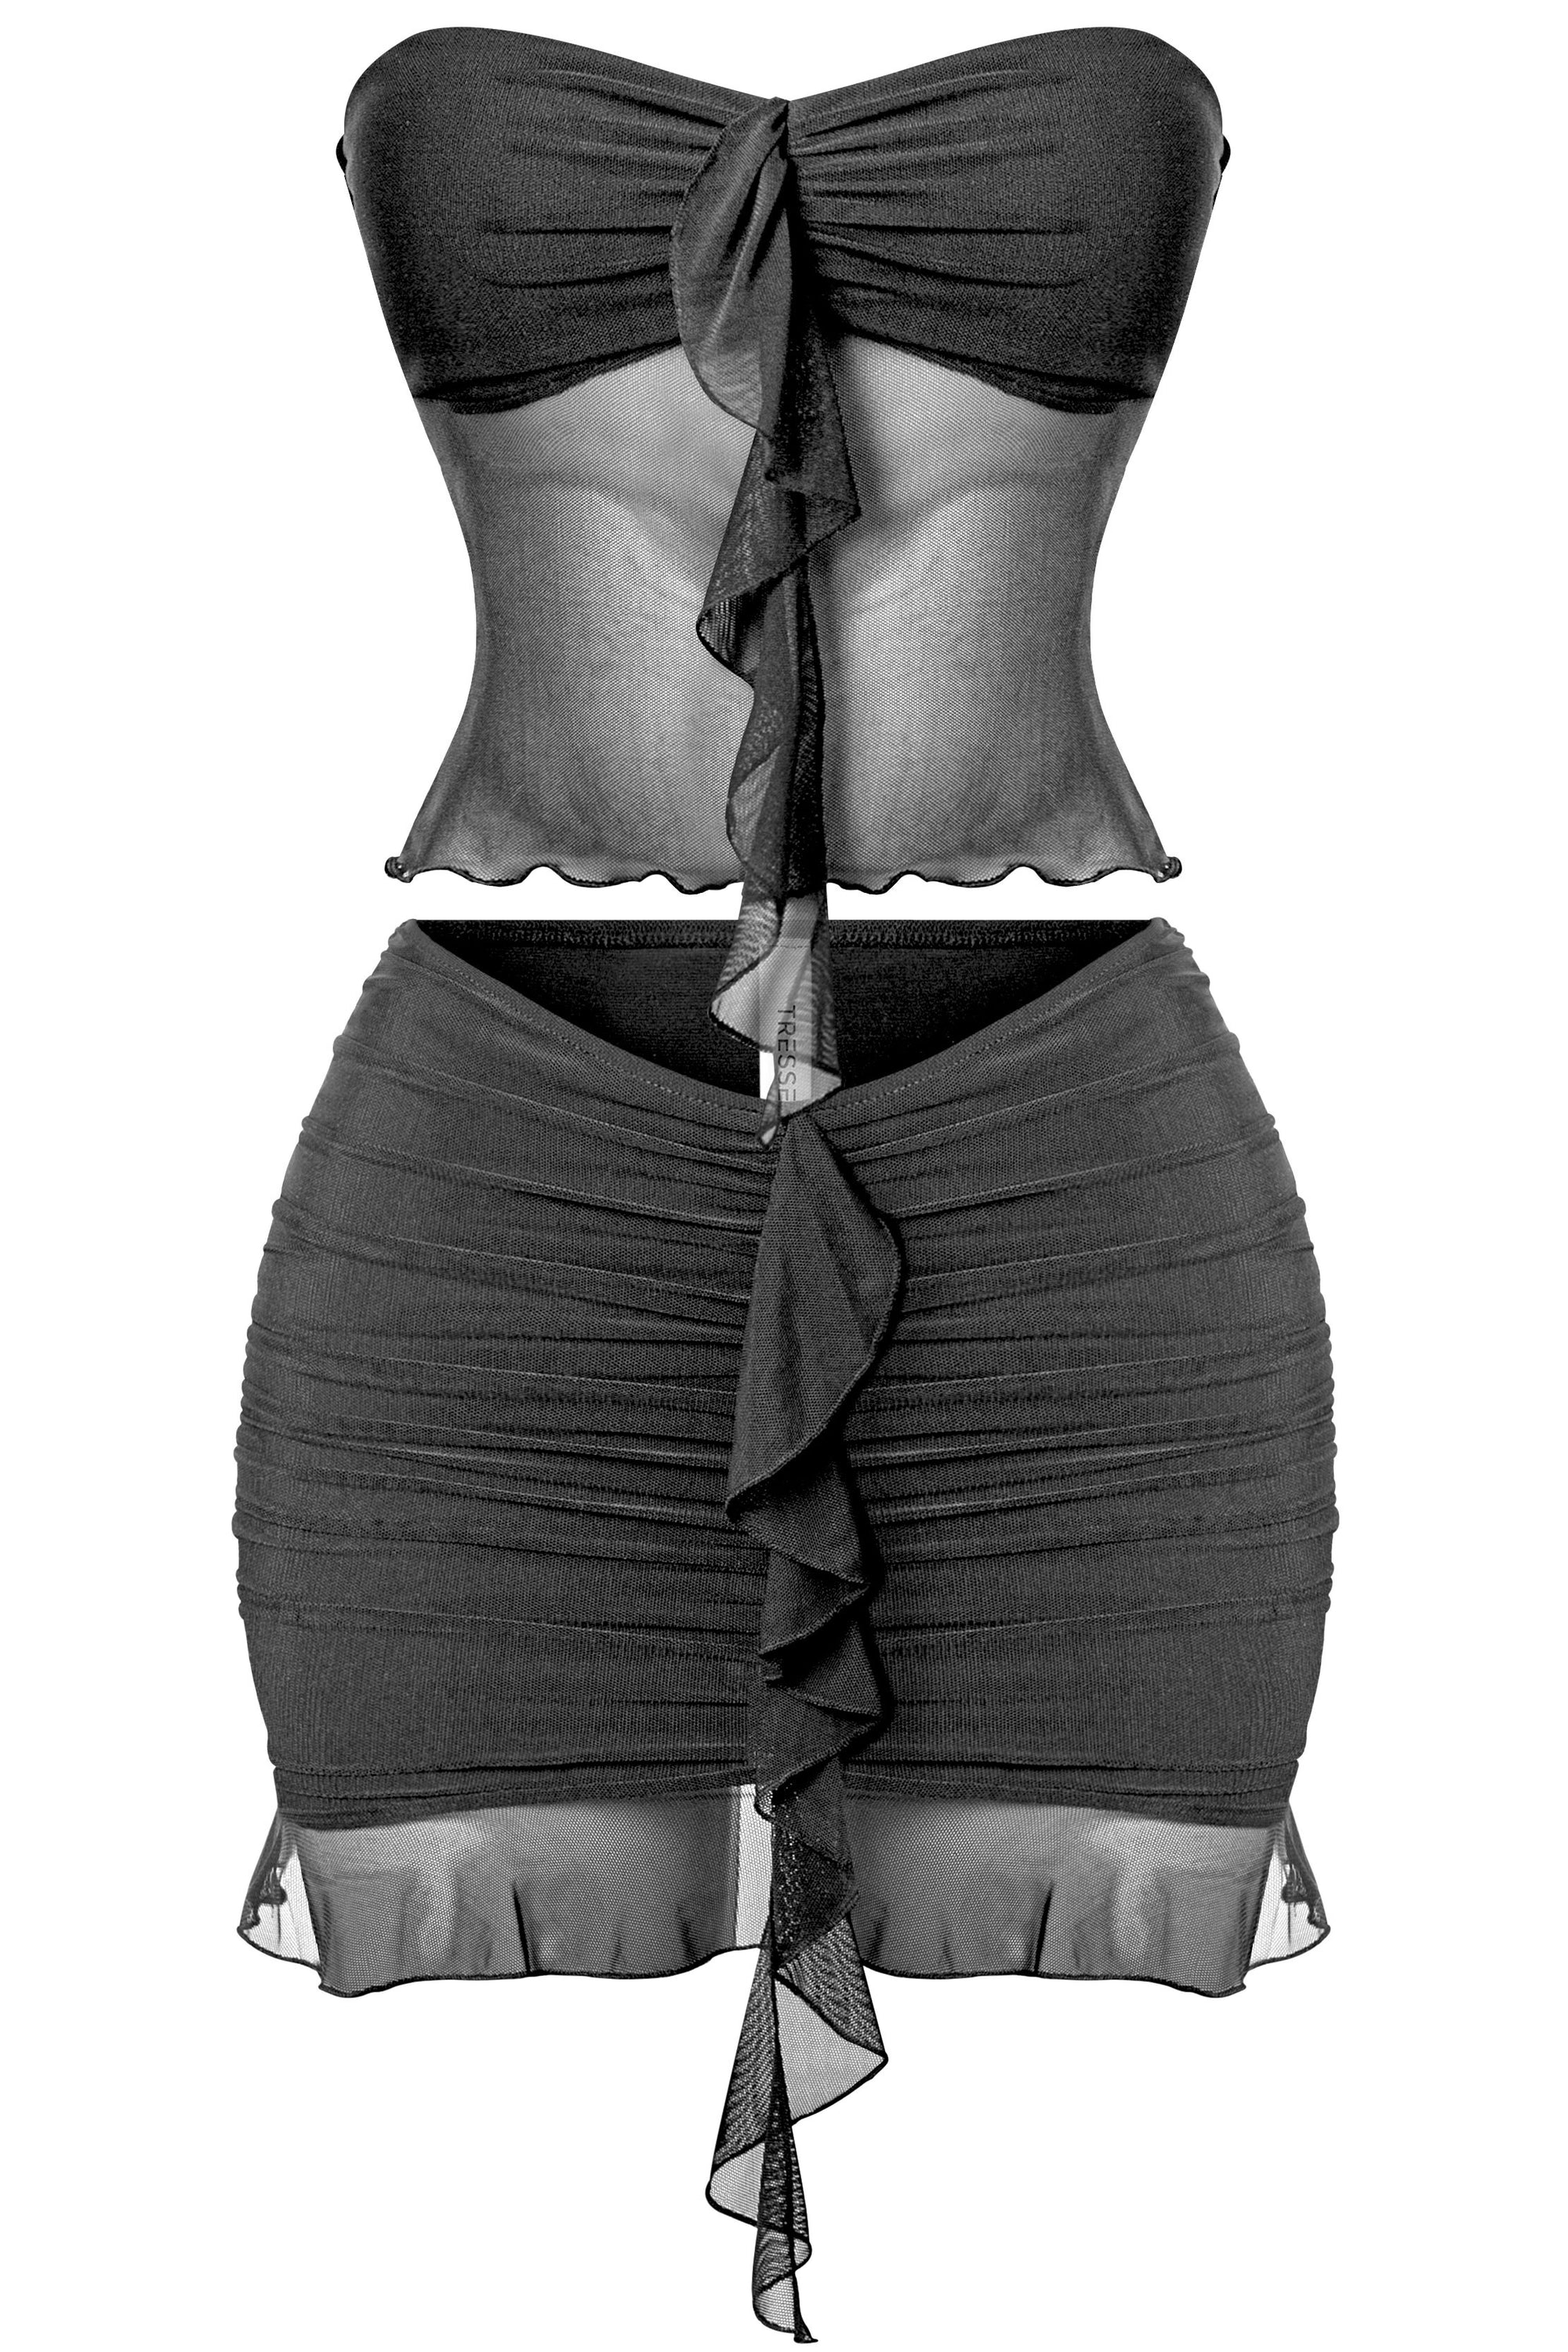 Black Ruffled Mesh Tube Top & Skirt set